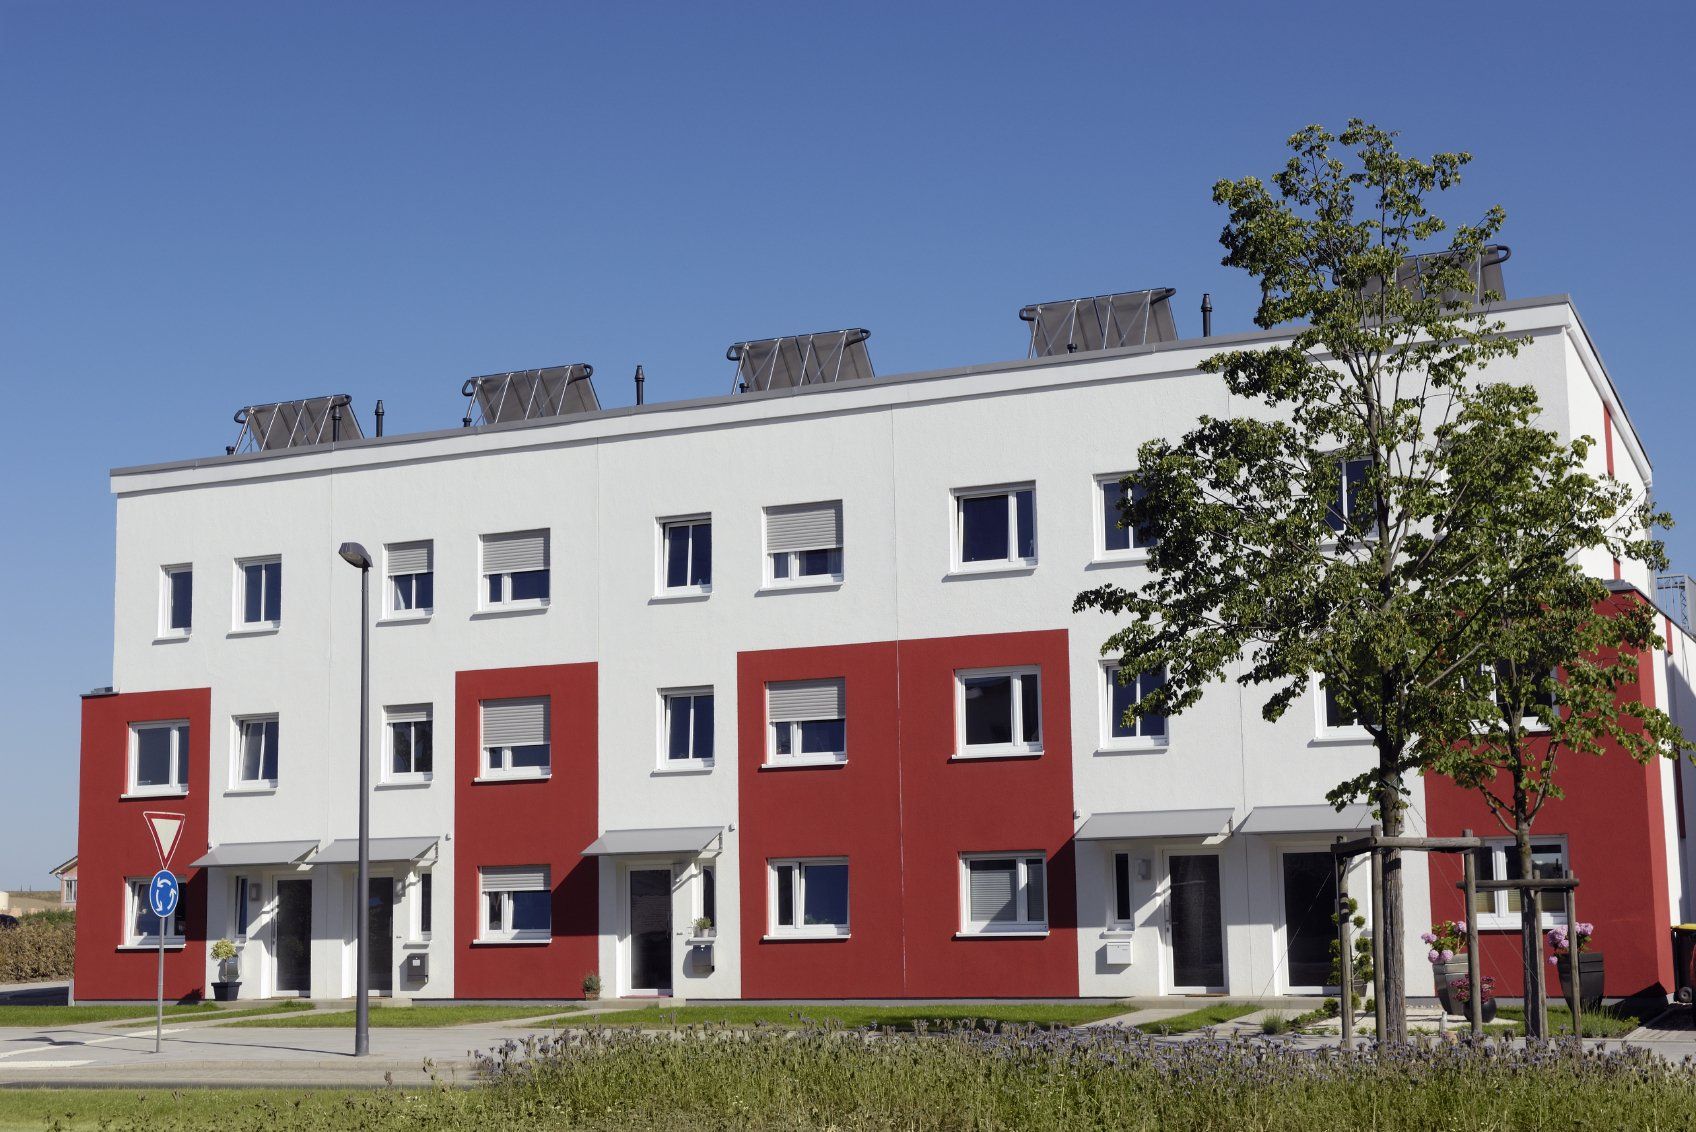 15 Wohnungen in Mülheim